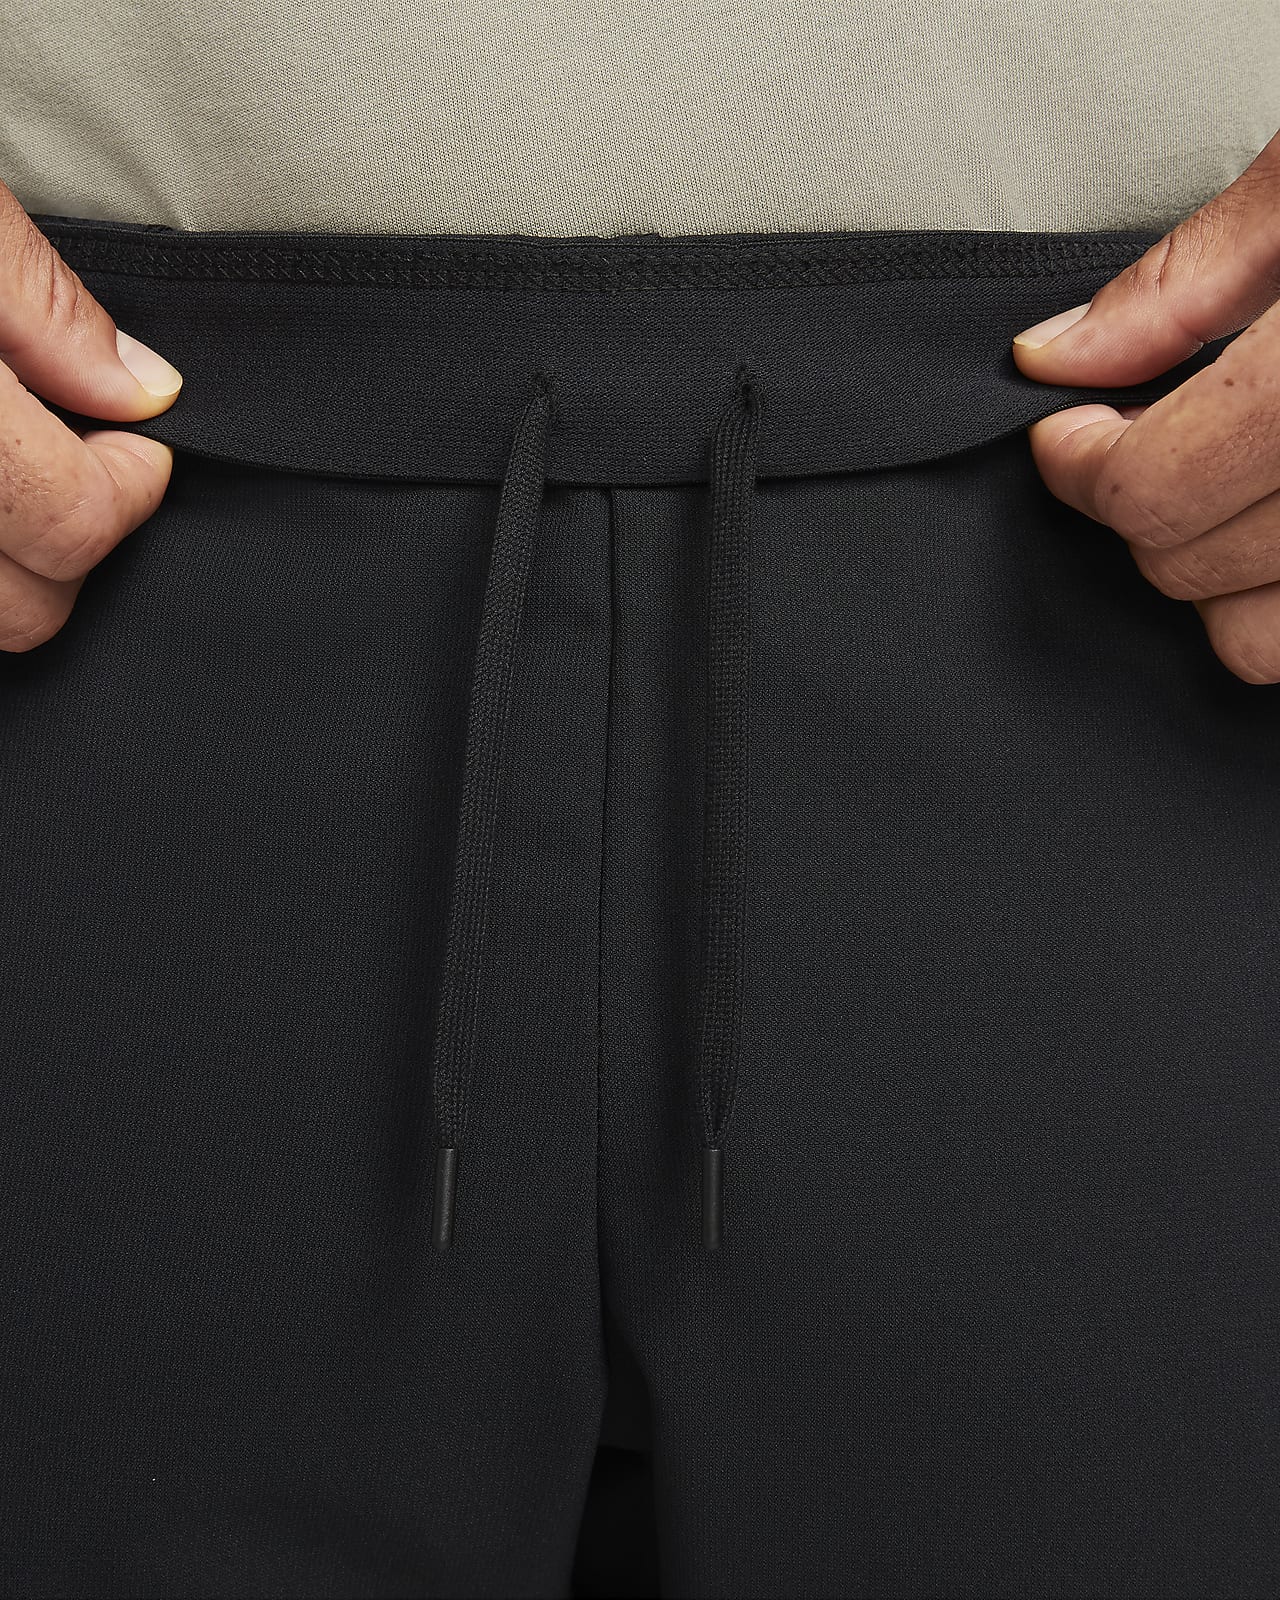 men's training pants nike flex